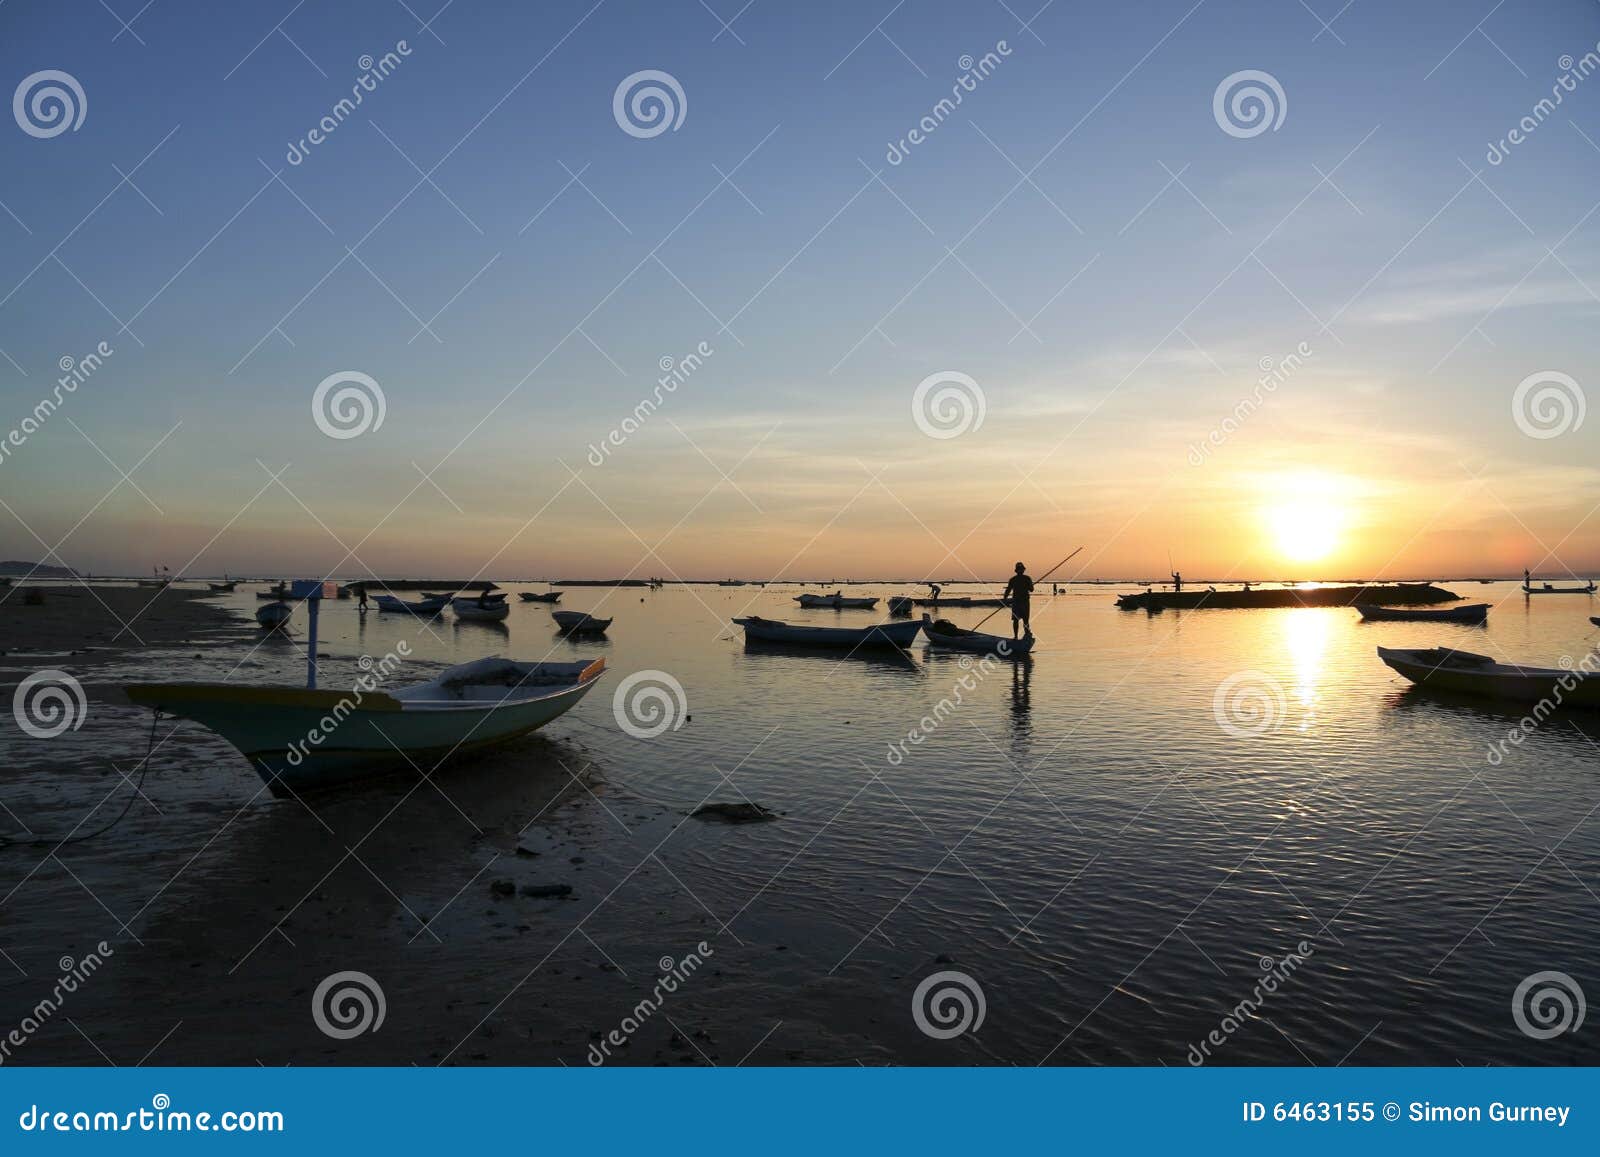 nusa lembongan sunset boats bali indonesia